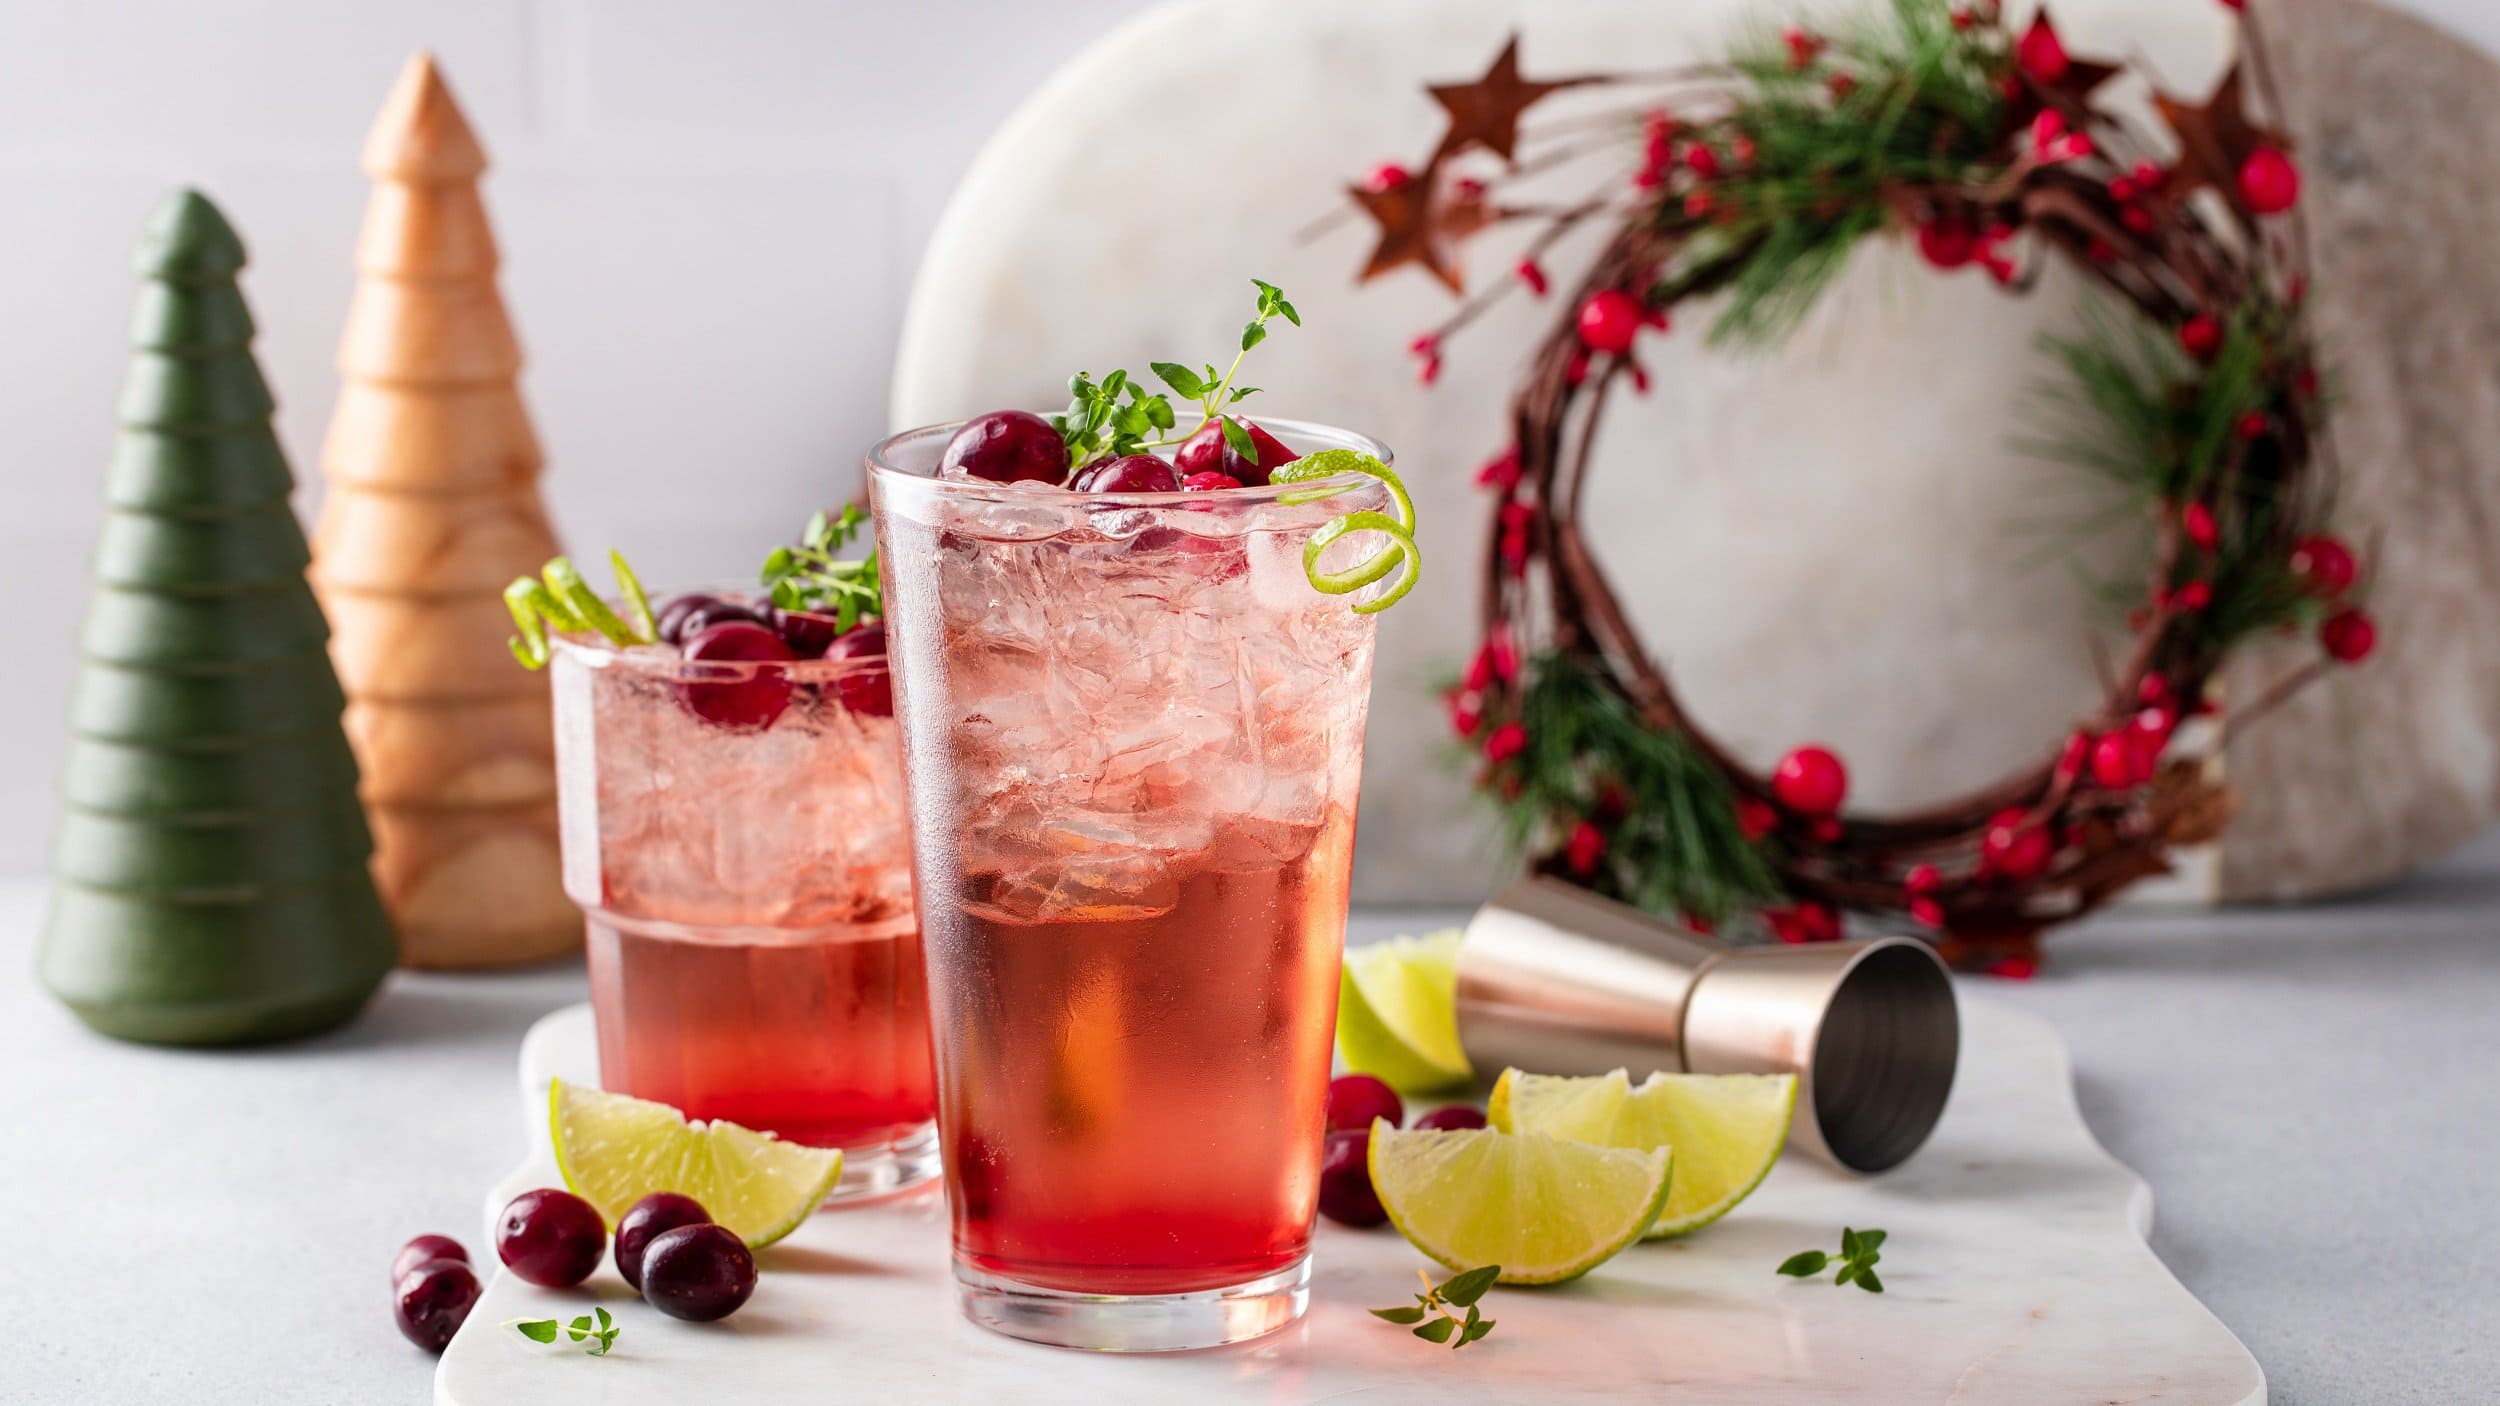 Zwei Gläser Tipsy Rudolph, ein roter Cocktail mit Wodka, darin Oregano, Cranberrys und Eiswürfel. Drumherum Weihnachtsdeko.